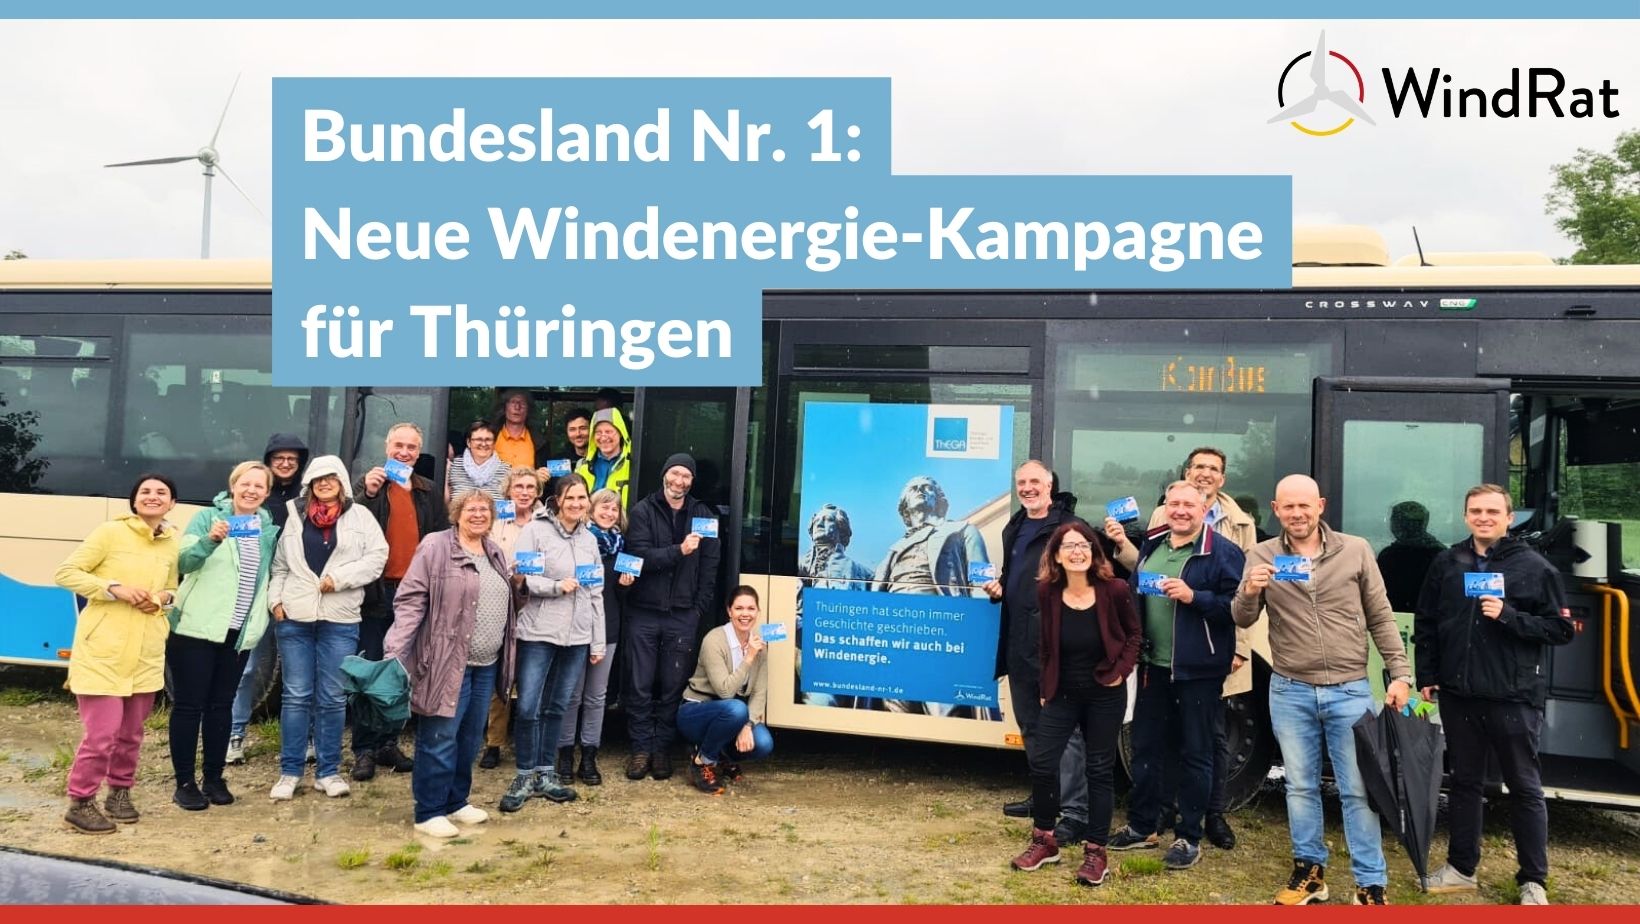 Eine Gruppe von ca. 20 Leuten steht bei trübem Wetter auf einer Wiese vor einem Bus. Im Hintergrund steht ein Windrad. Der Bus trägt das Kampagnen-Plakat mit der Aufschrift "Thüringen hat immer schon Geschichte geschrieben: Das schaffen wir auch bei Windenergie!". Weiterhin ist darauf die Statue von Schiller und Goethe und das Logo der Thüringer Landesenergieagentur und des WindRats zu sehen.